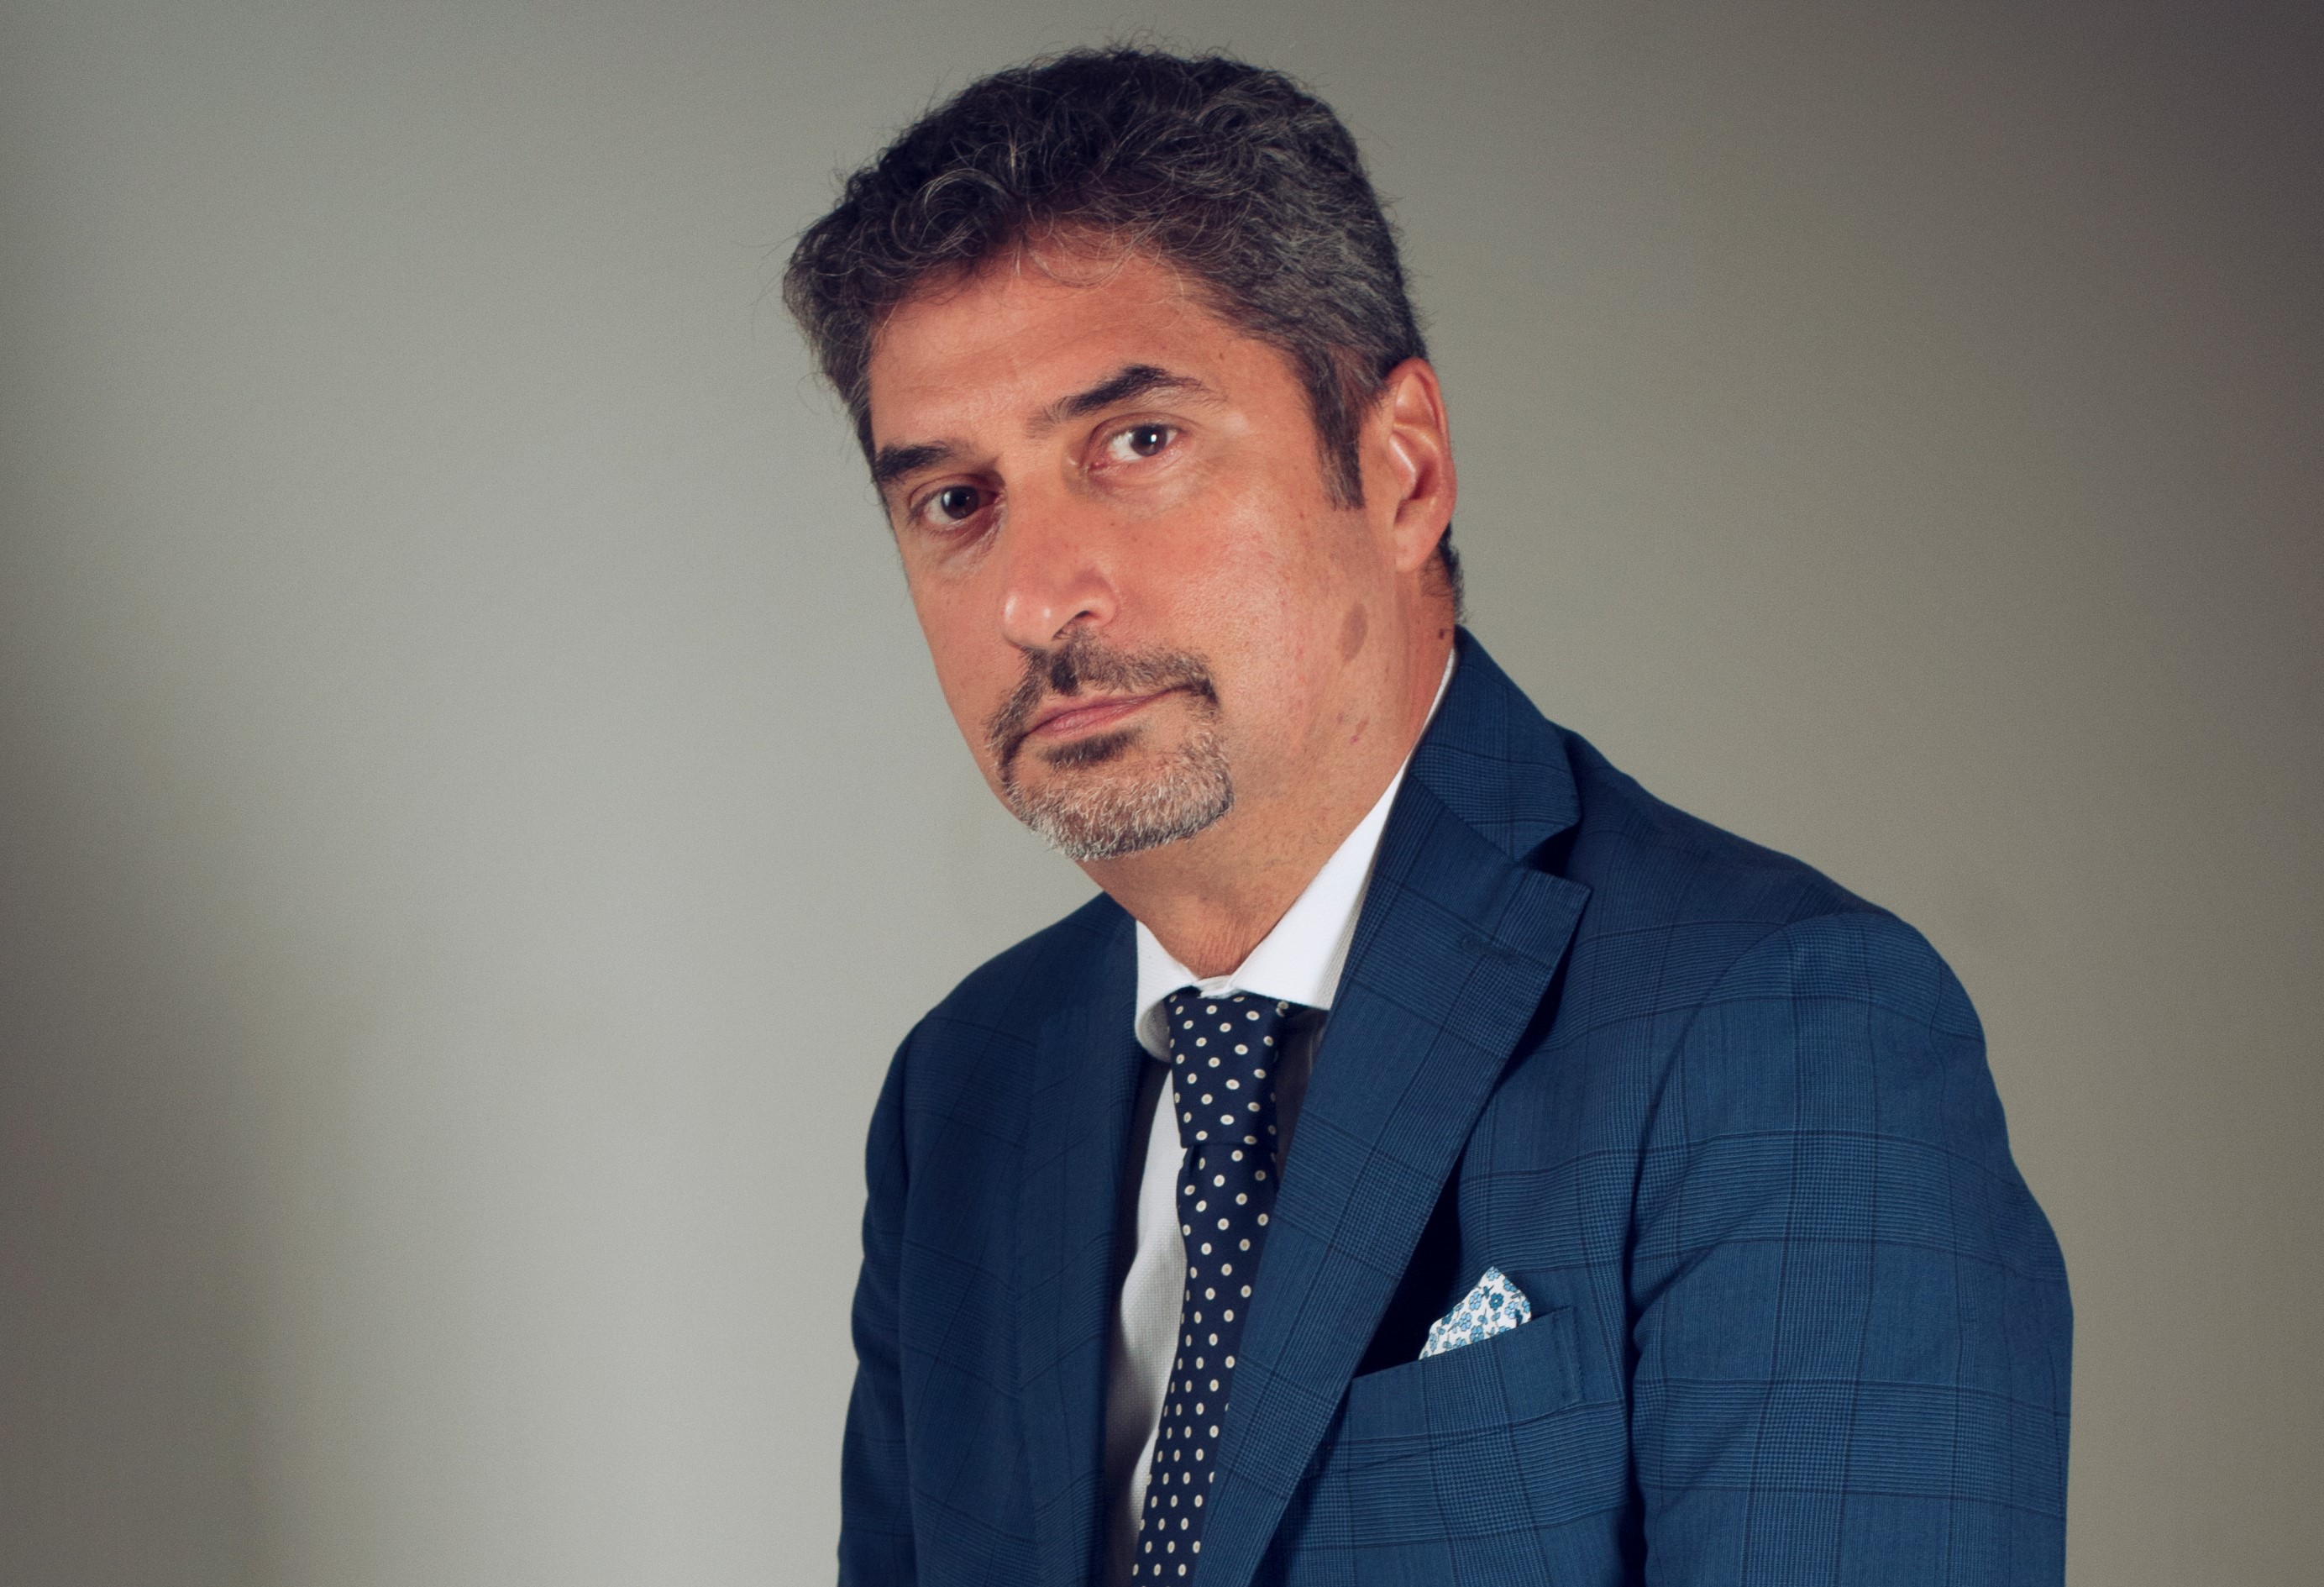 Covid-19 competenze inadeguate - l'avv. Luciano Zagarrigo con vestito blu e cravatta a pois